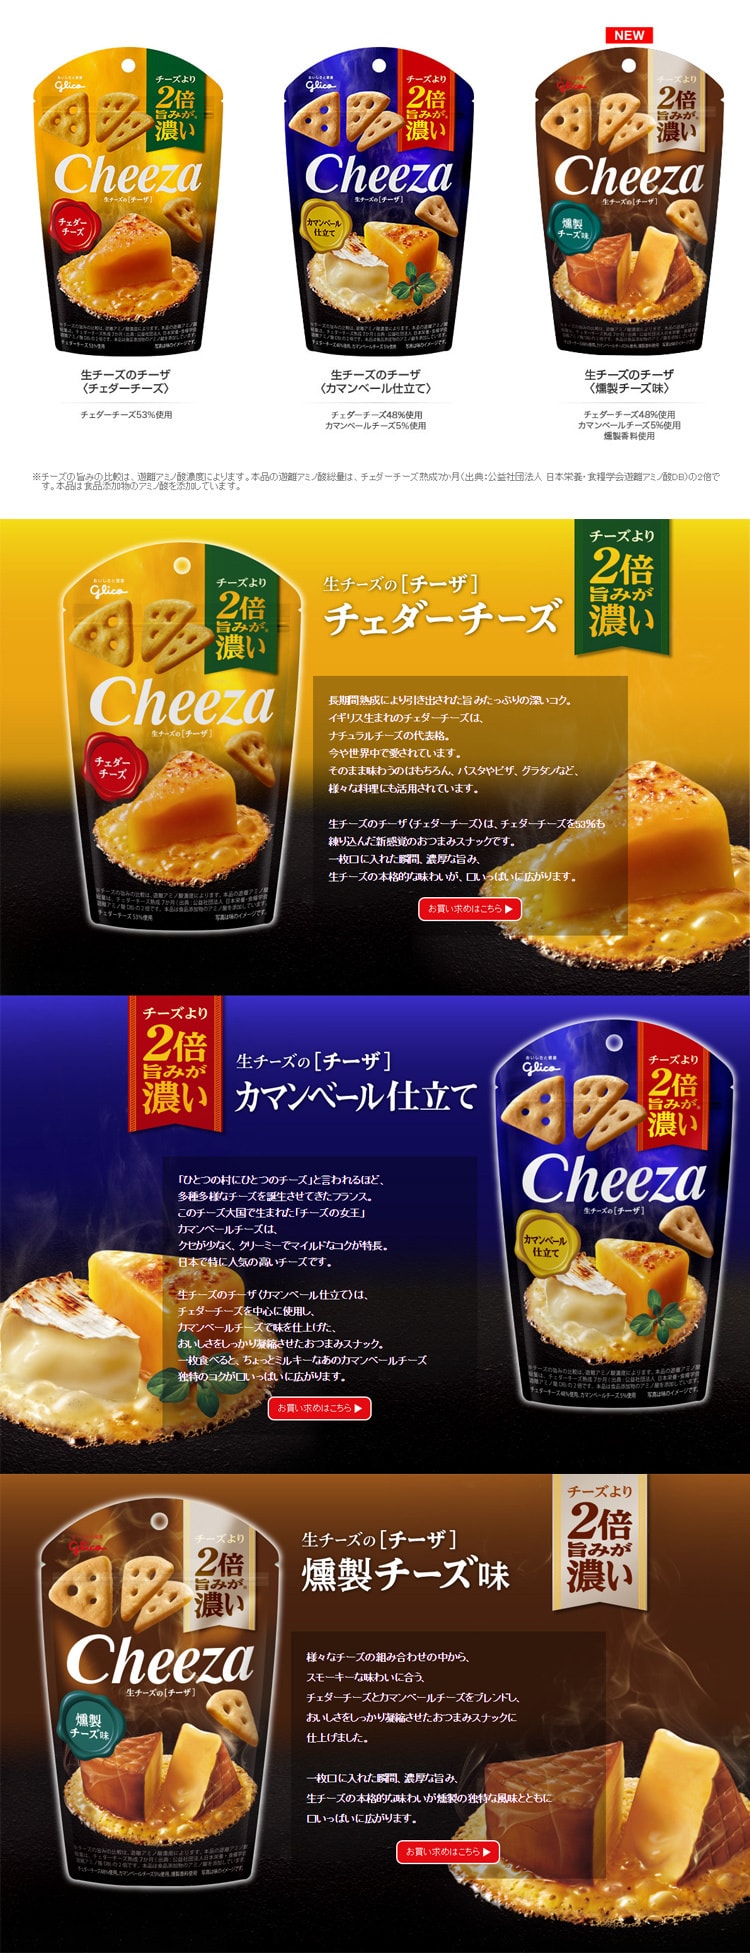 【日本直郵】GLICO格力高 papi醬推薦 乳酪起司三角薄脆三角餅乾 雙倍起司口味 36g